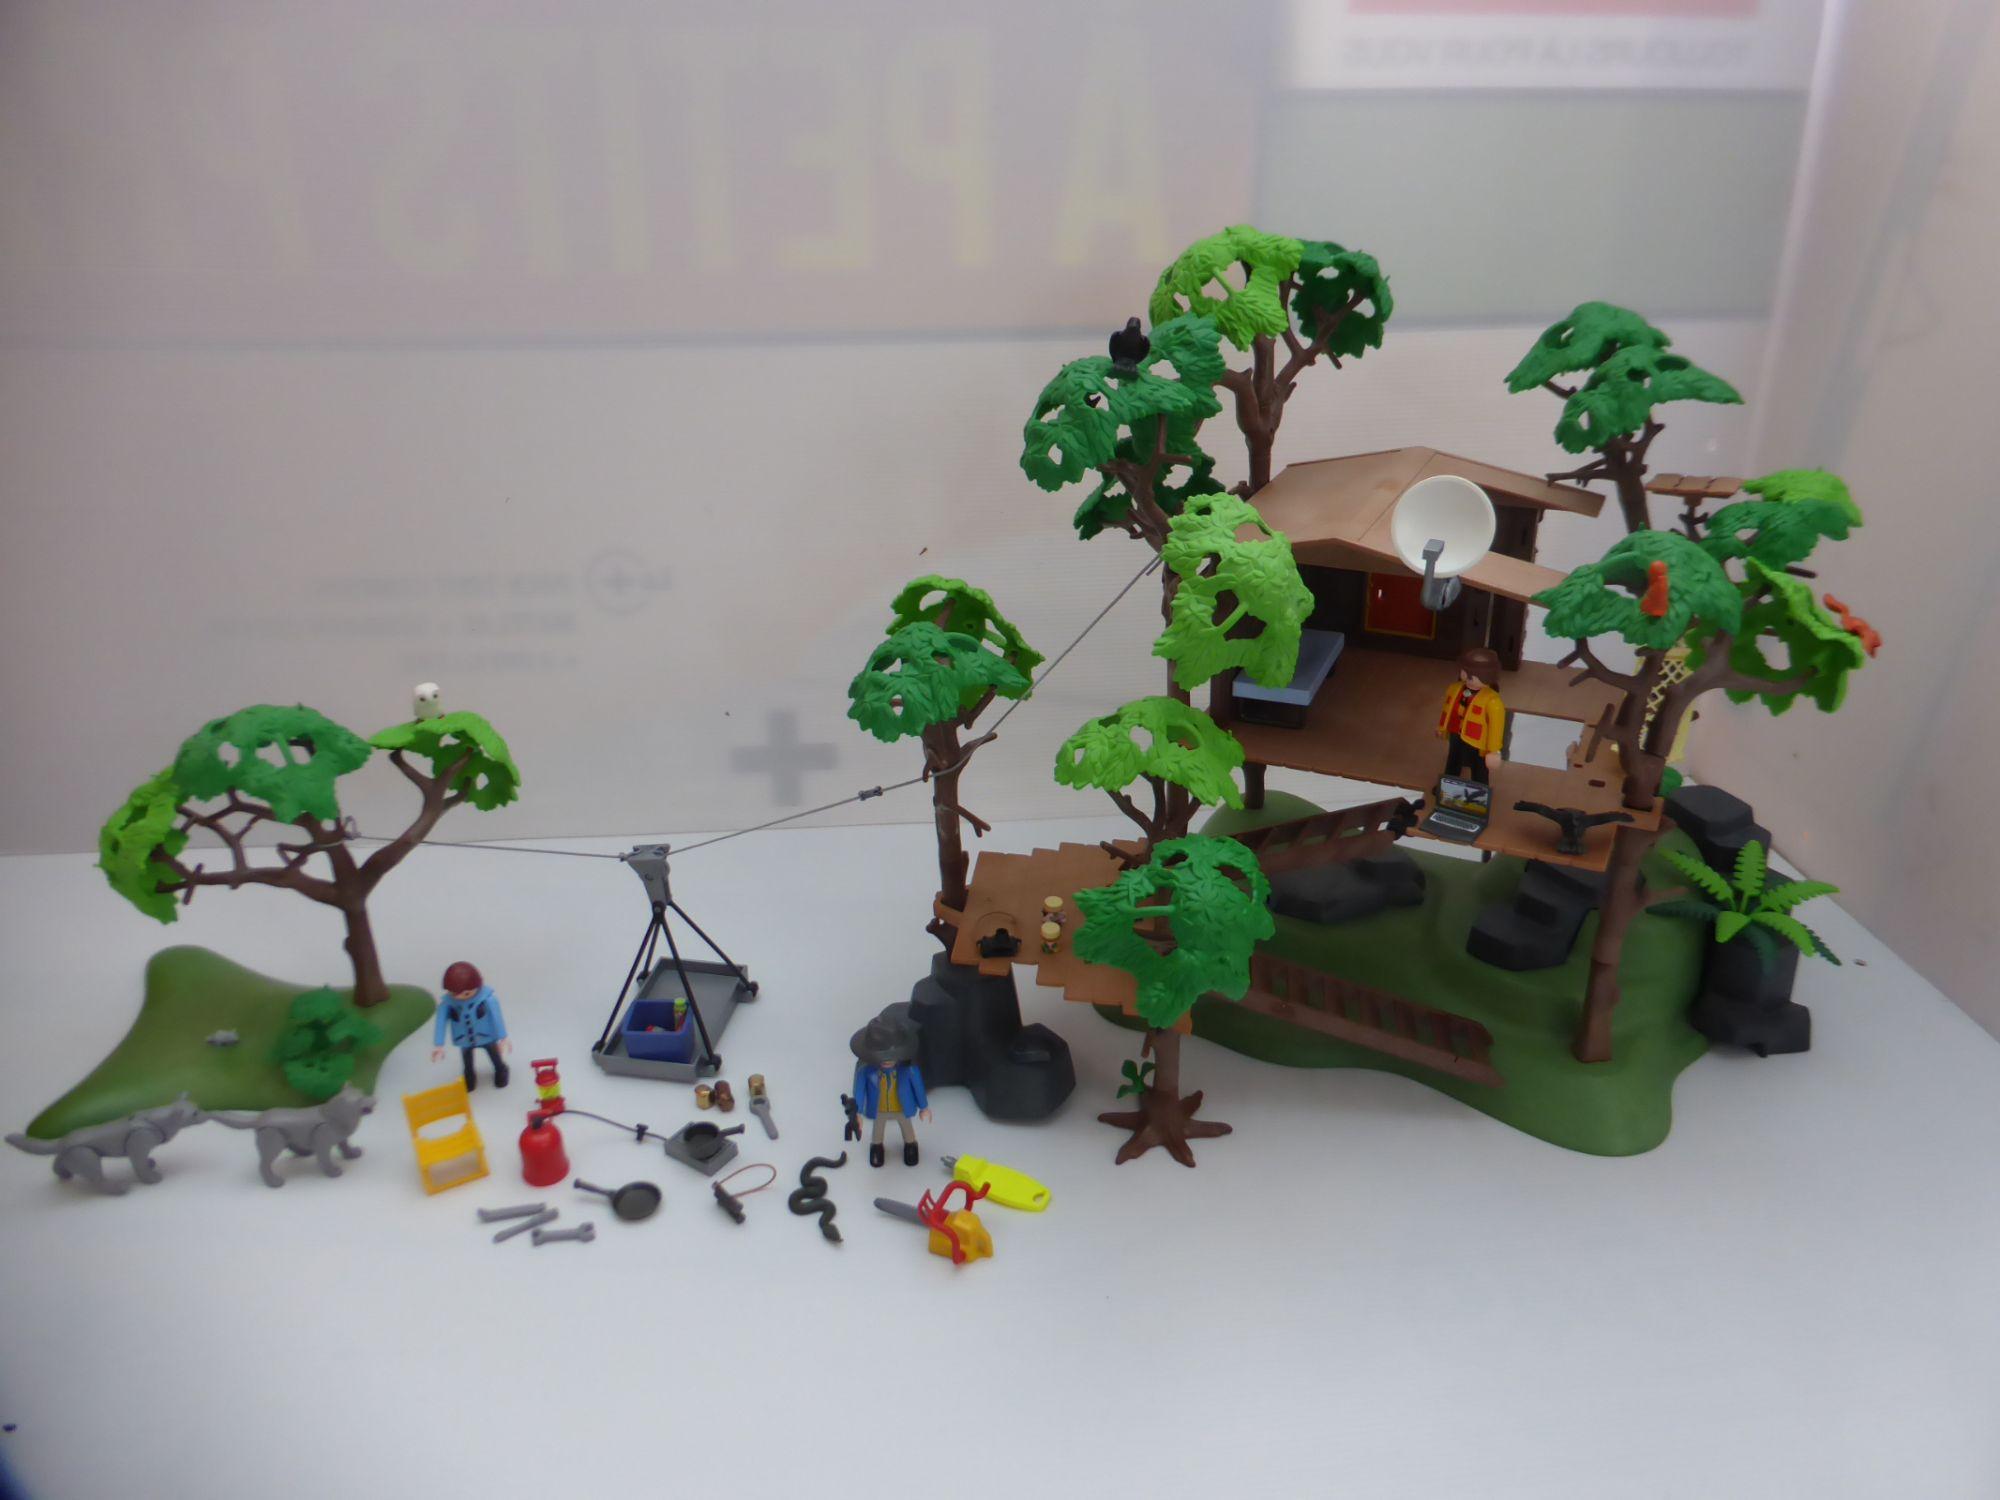 Playmobil Family Fun 9282 Moniteur de ski avec enfants - Playmobil - Achat  & prix